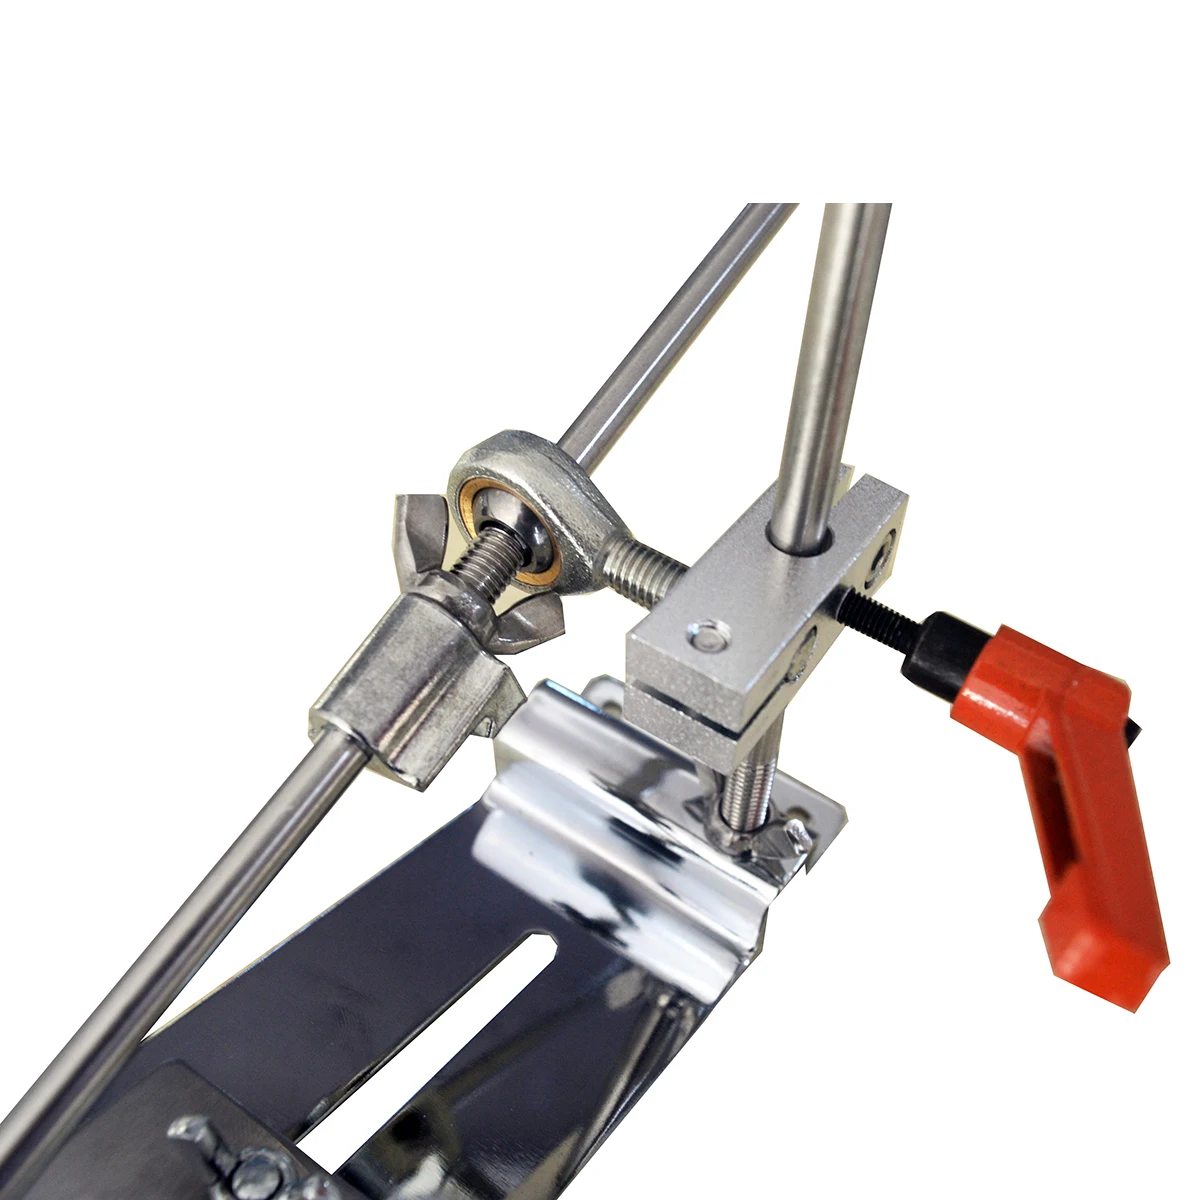 Ruixin pro Сталь профессиональная точилка для ножей инструмент заточка машина кухонные аксессуары шлифовальное устройство бар Алмазный слайдер